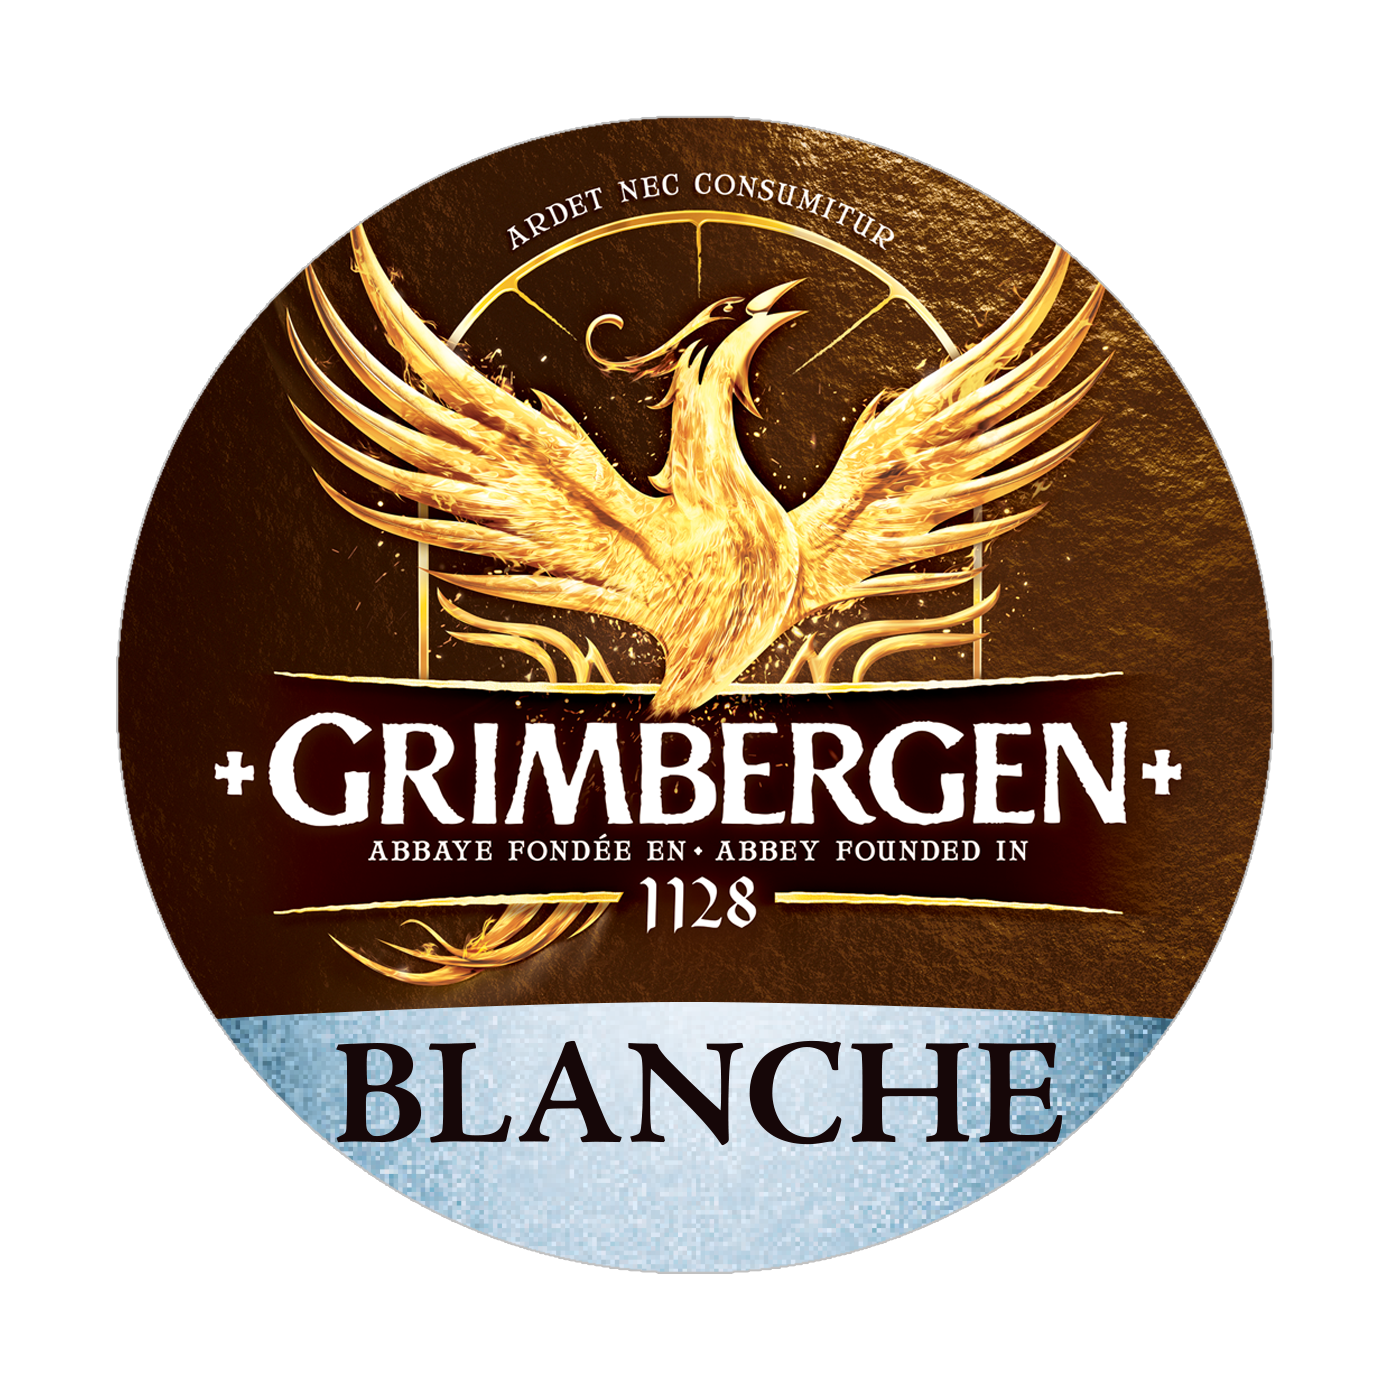 Grimbergen - Blanche